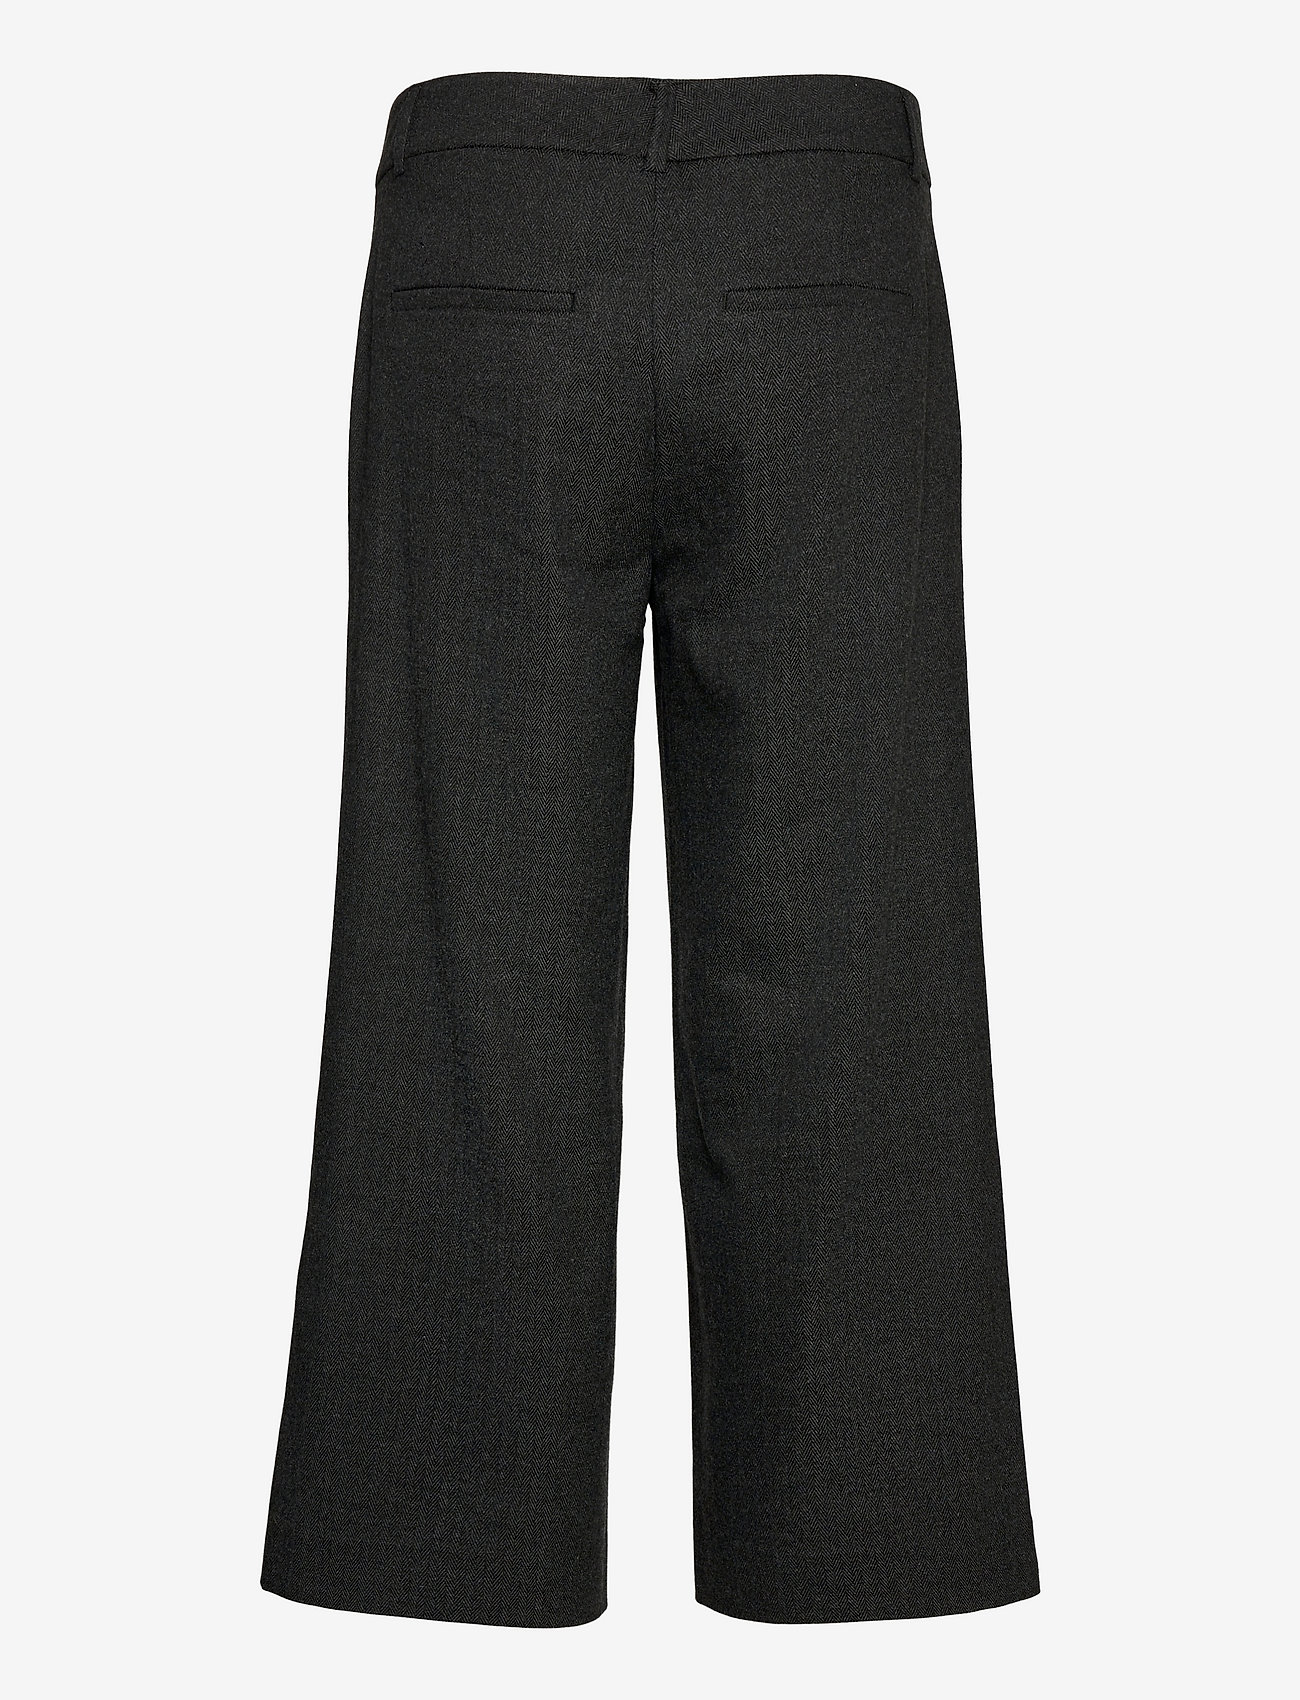 FIVEUNITS Dena Crop 546 - Wide leg trousers | Boozt.com